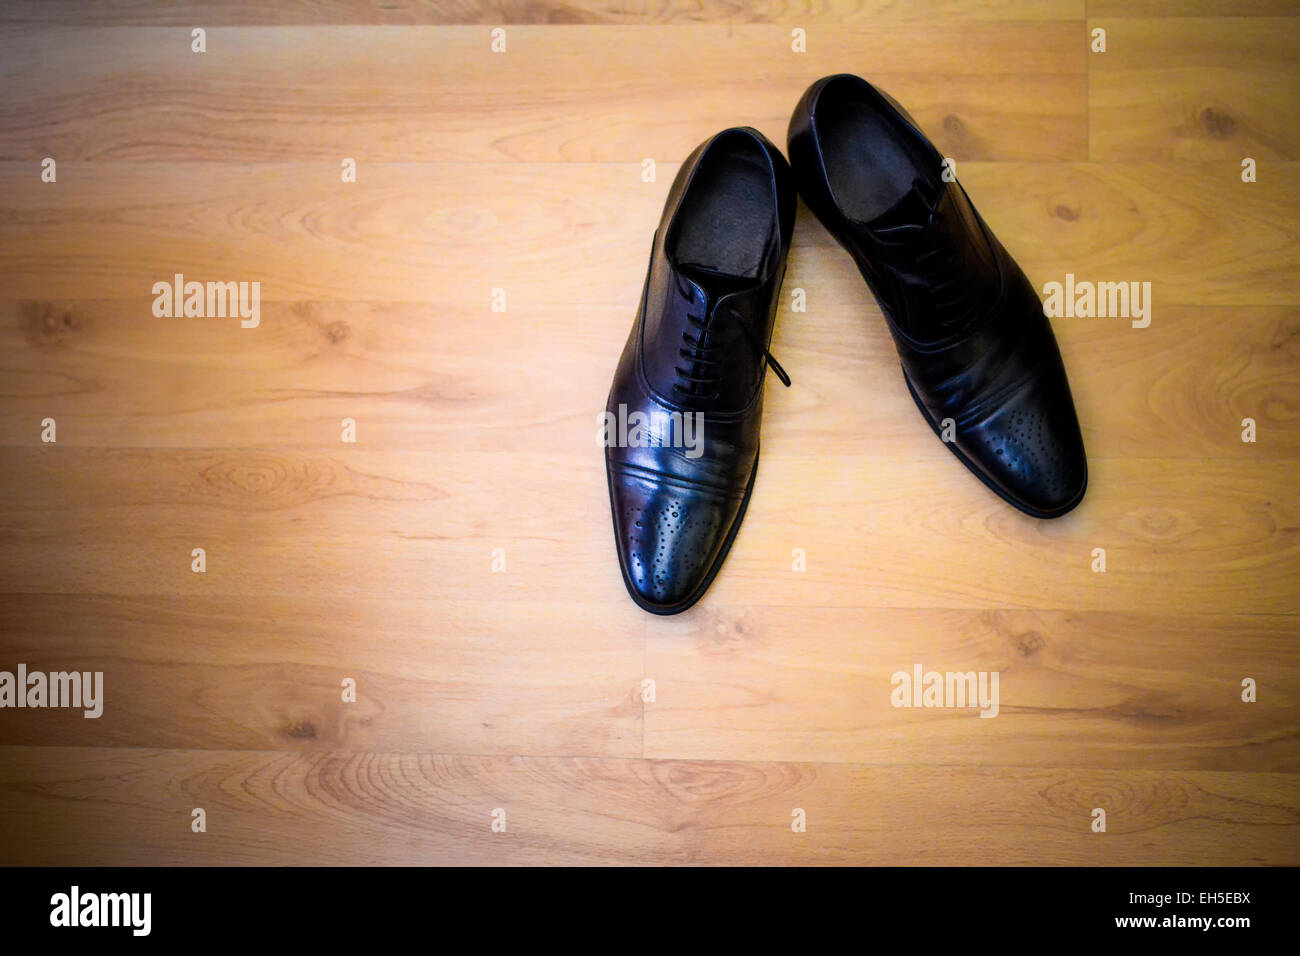 Black shoes groom sitting on hardwood floors Stock Photo